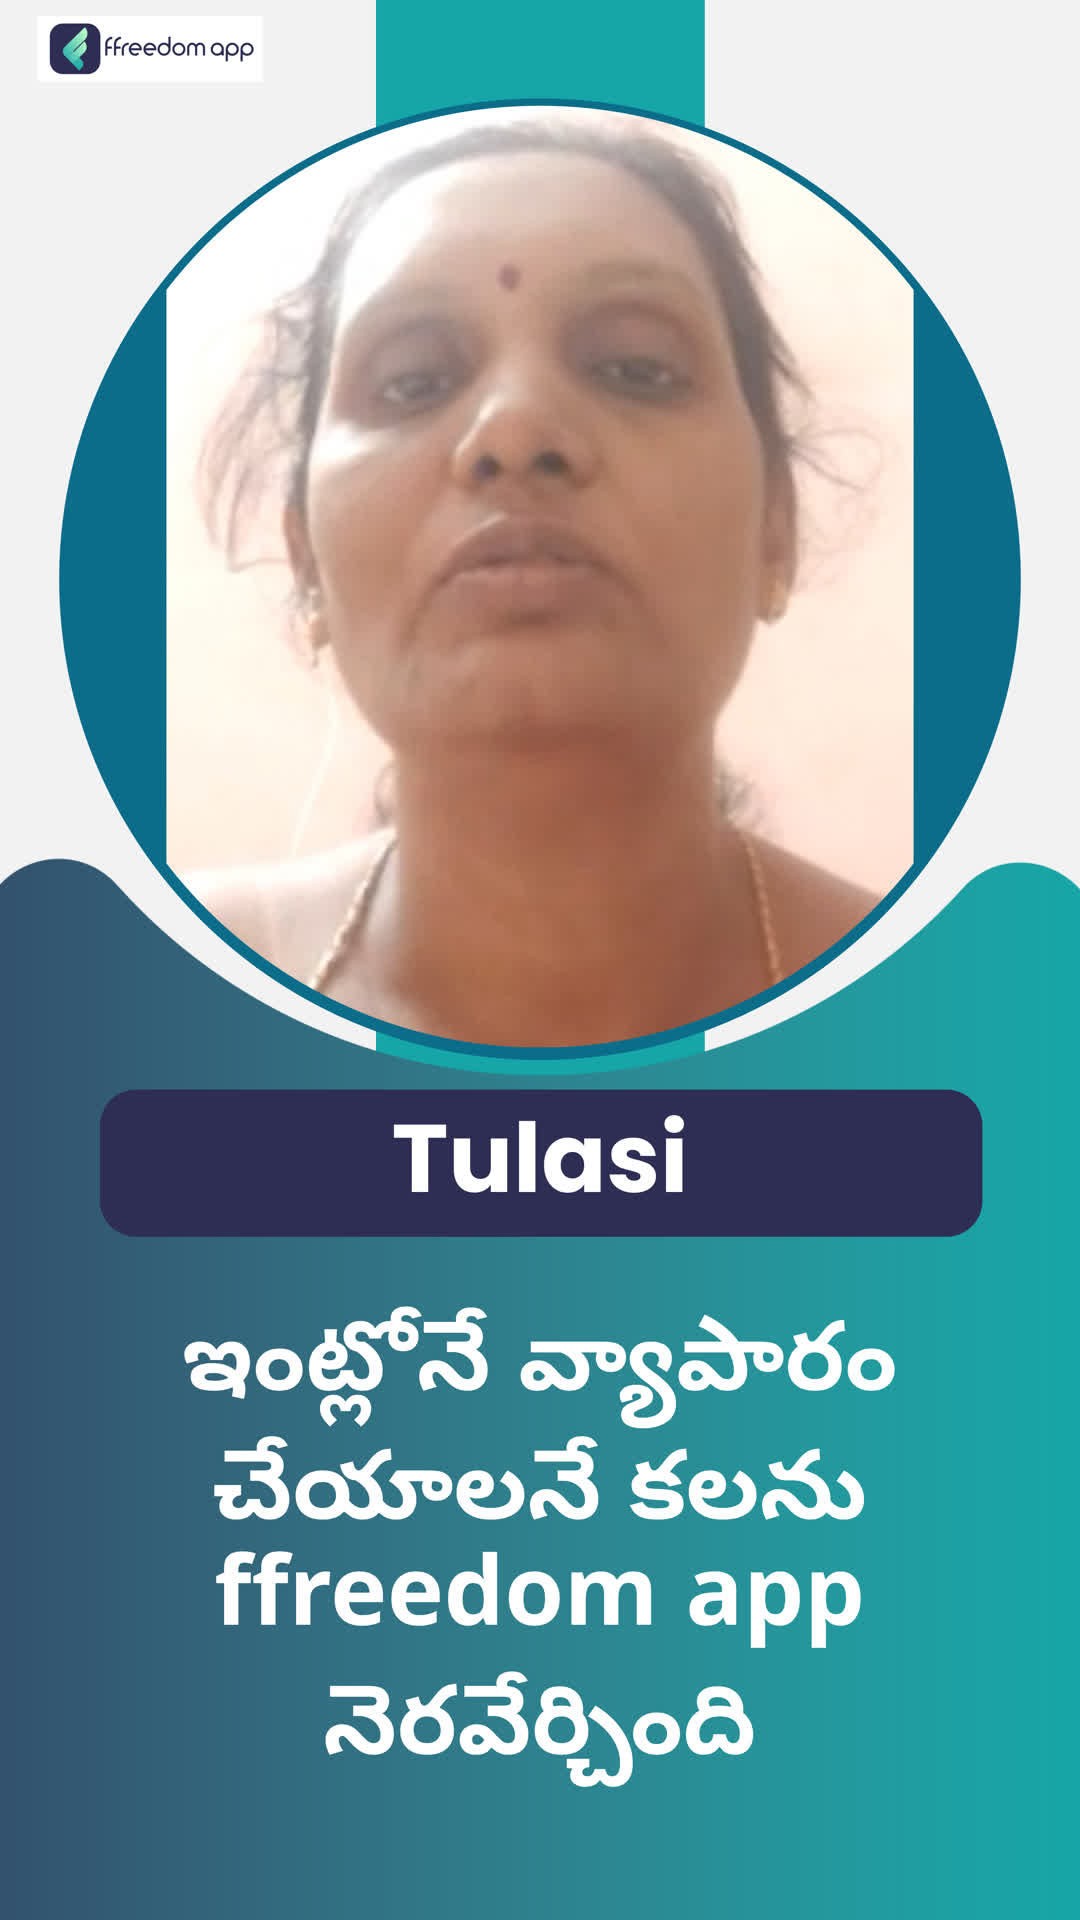 Tulasi's Honest Review of ffreedom app - Visakhapatnam ,Telangana